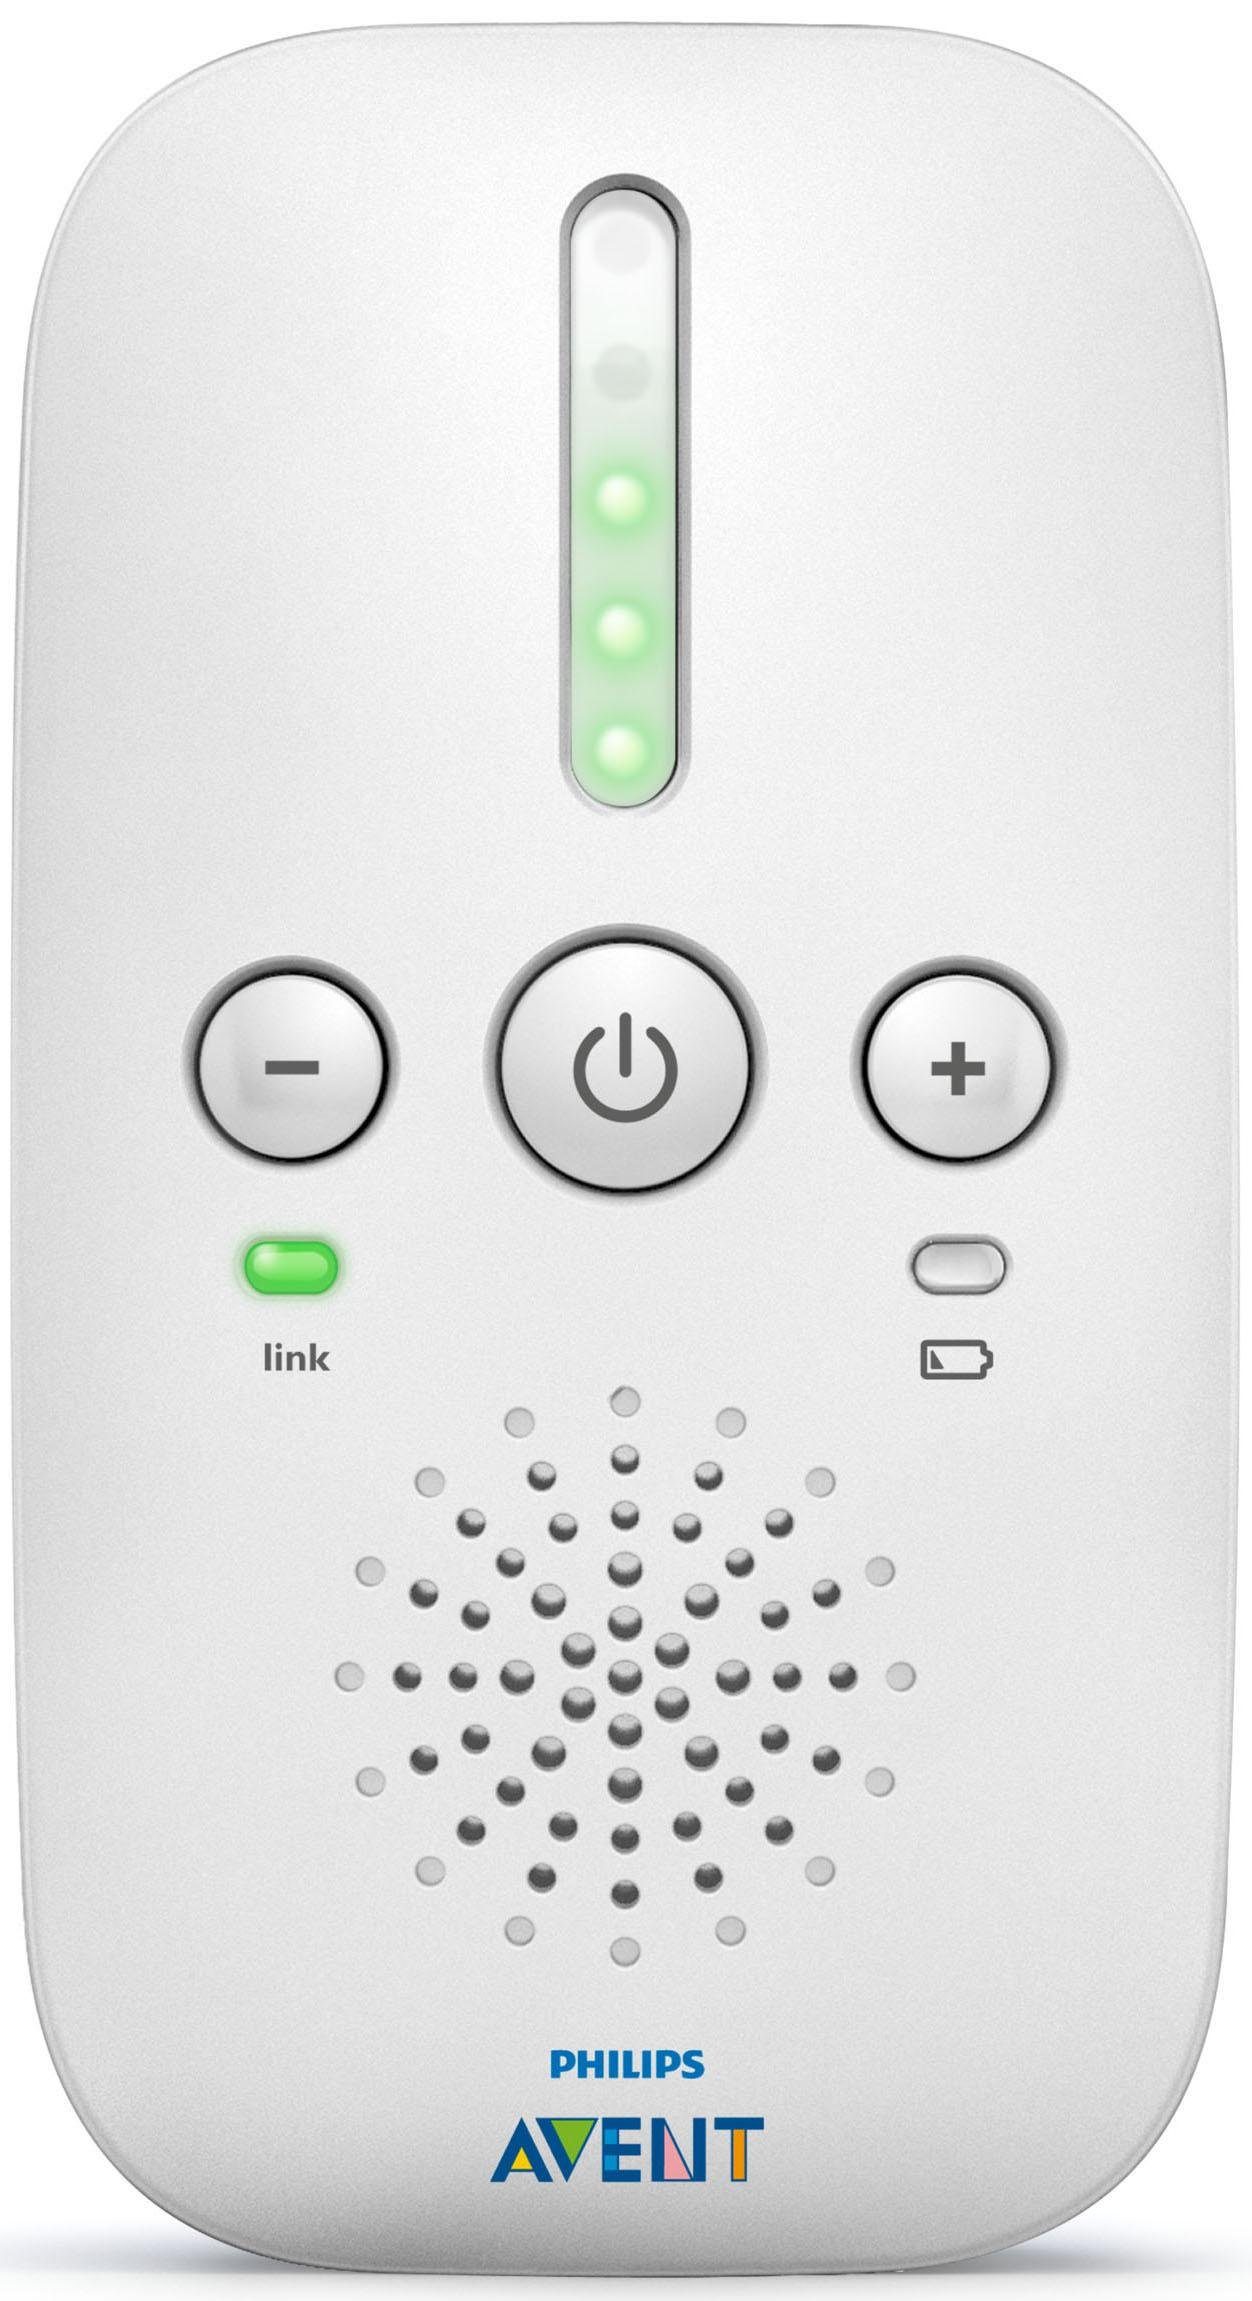 Philips AVENT Babyphone SCD503/26, mit und Nachtlicht ECO-Modus Smart